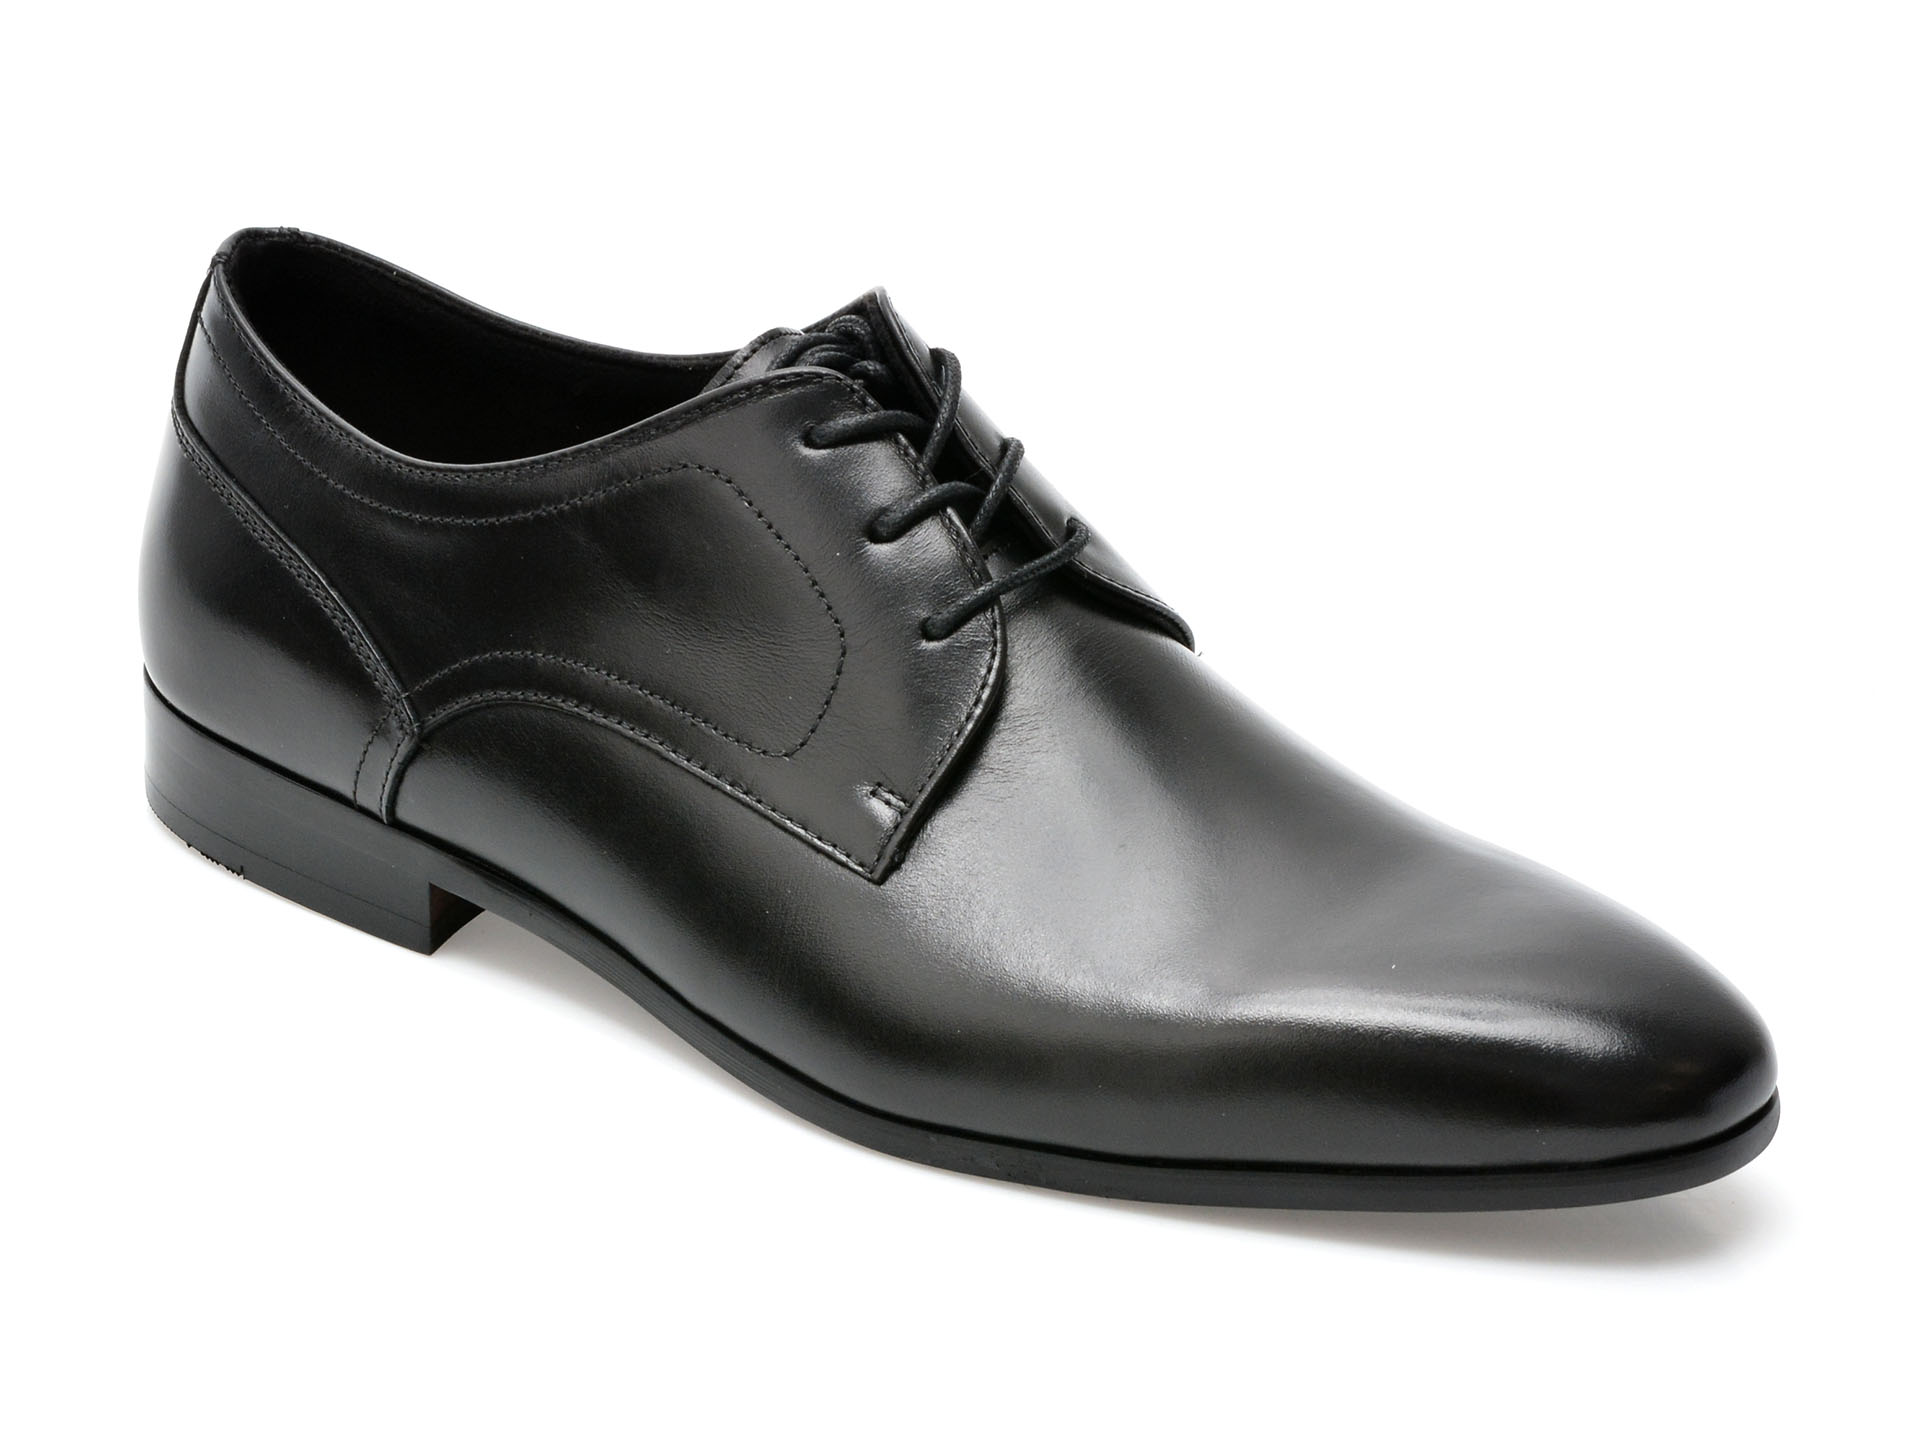 Pantofi ALDO negri, DELFORDFLEX009, din piele naturala /barbati/pantofi